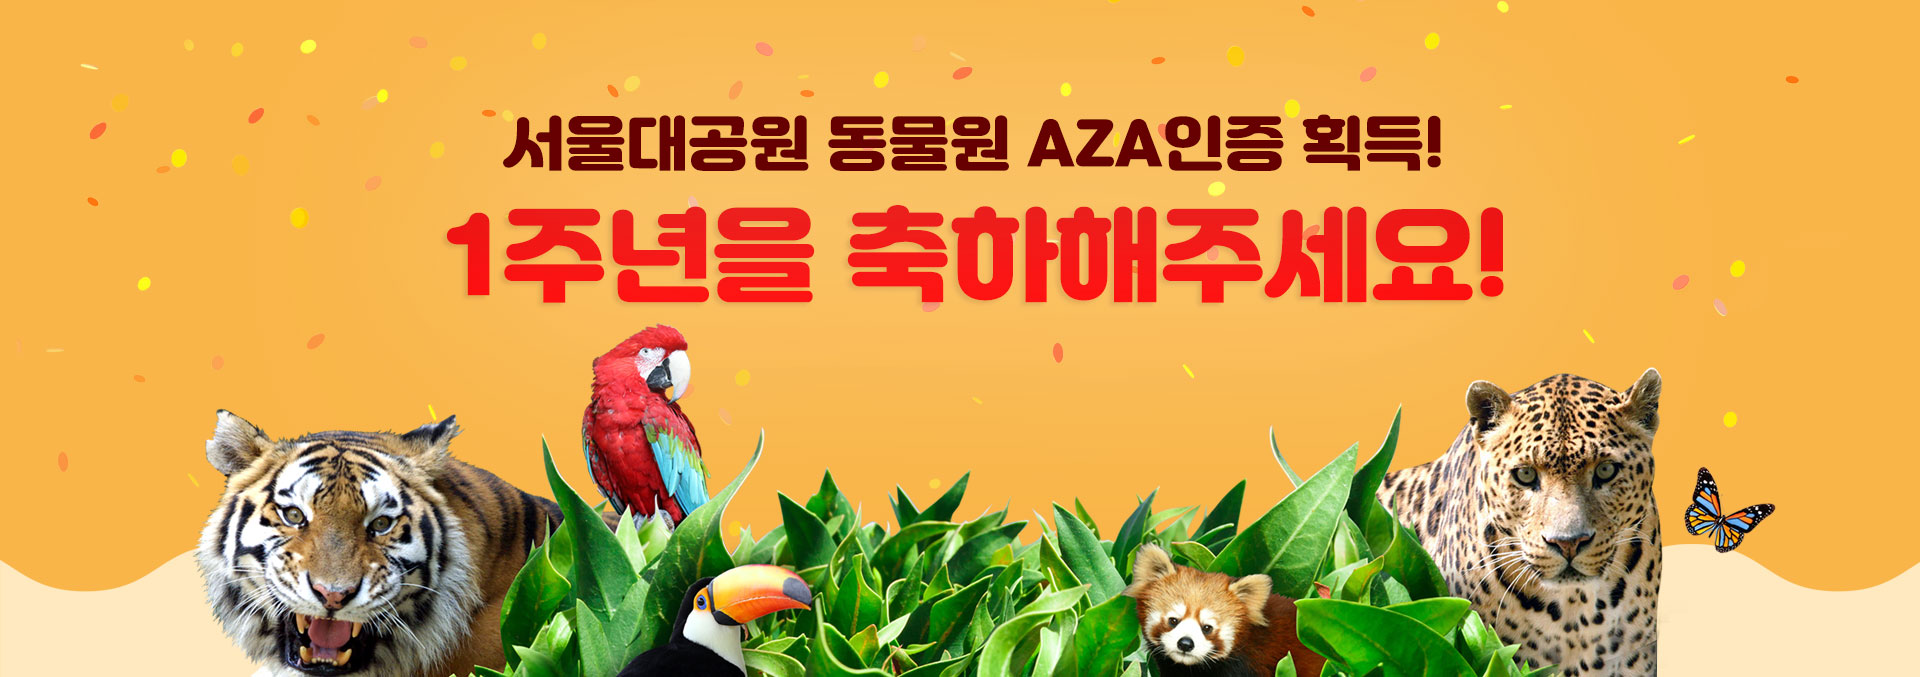 서울대공원 동물원 AZA인증 획득, 1주년을 축하해주세요.